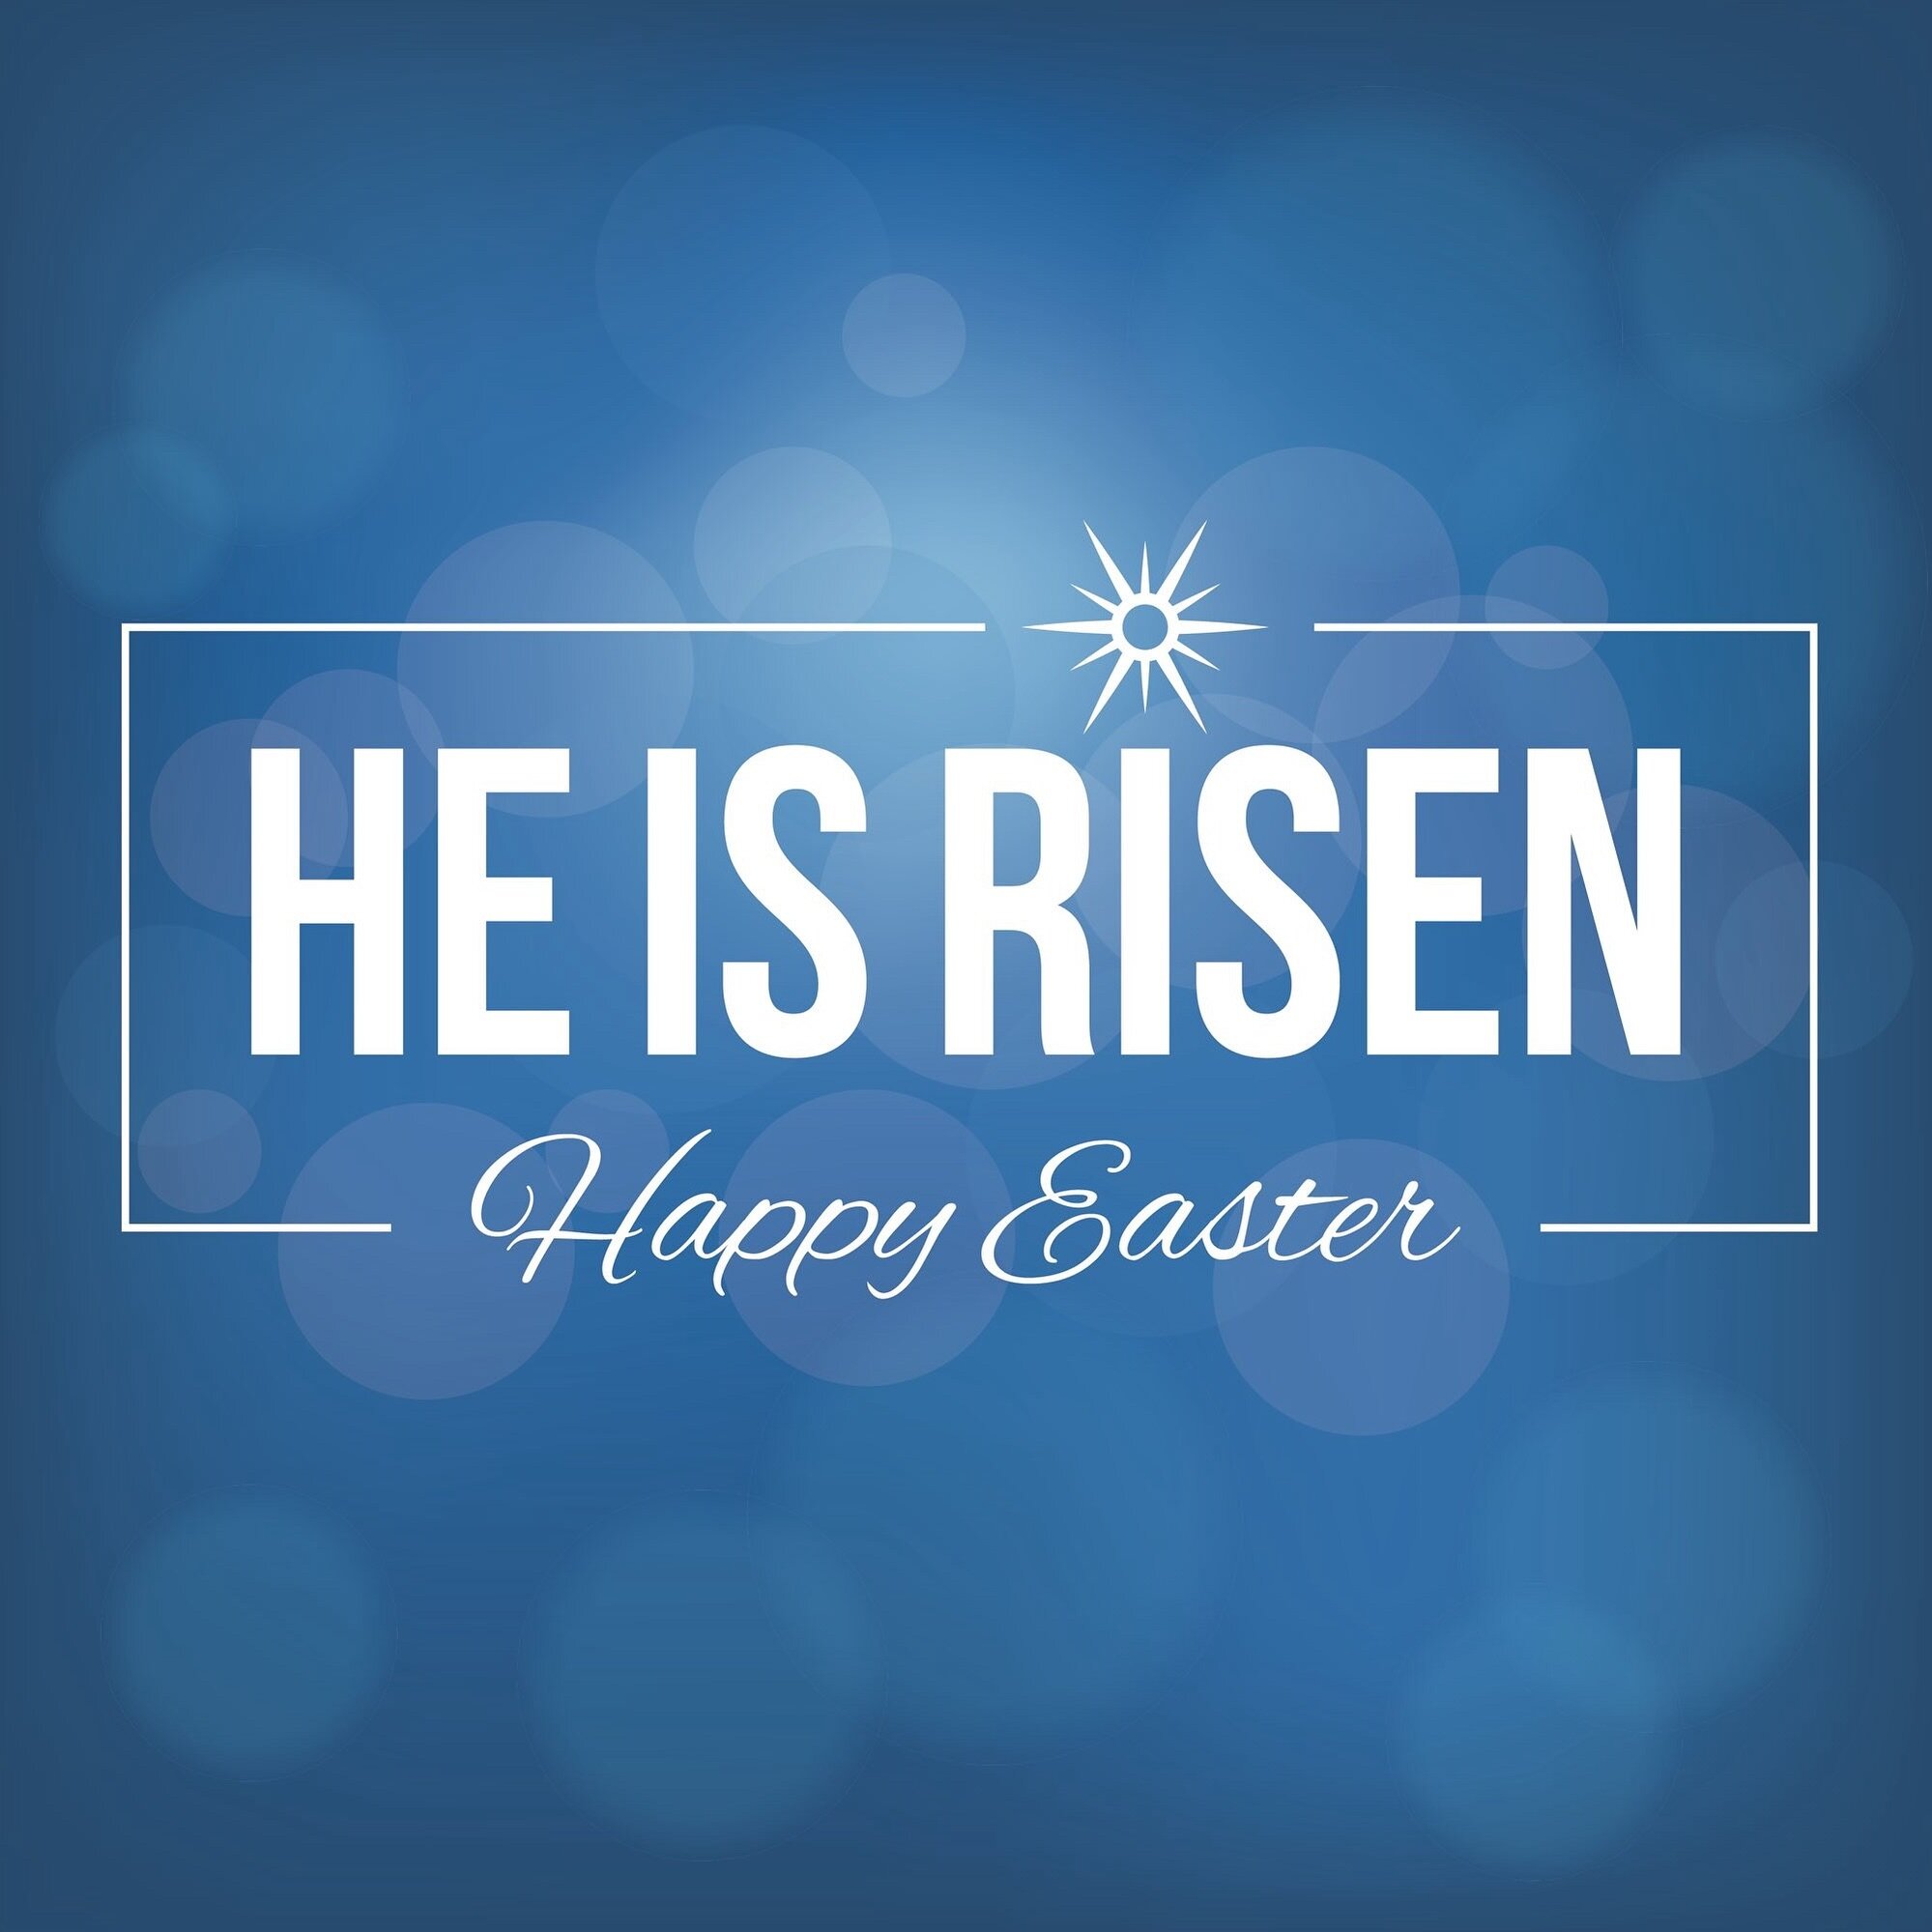 Happy Easter! He is risen!!